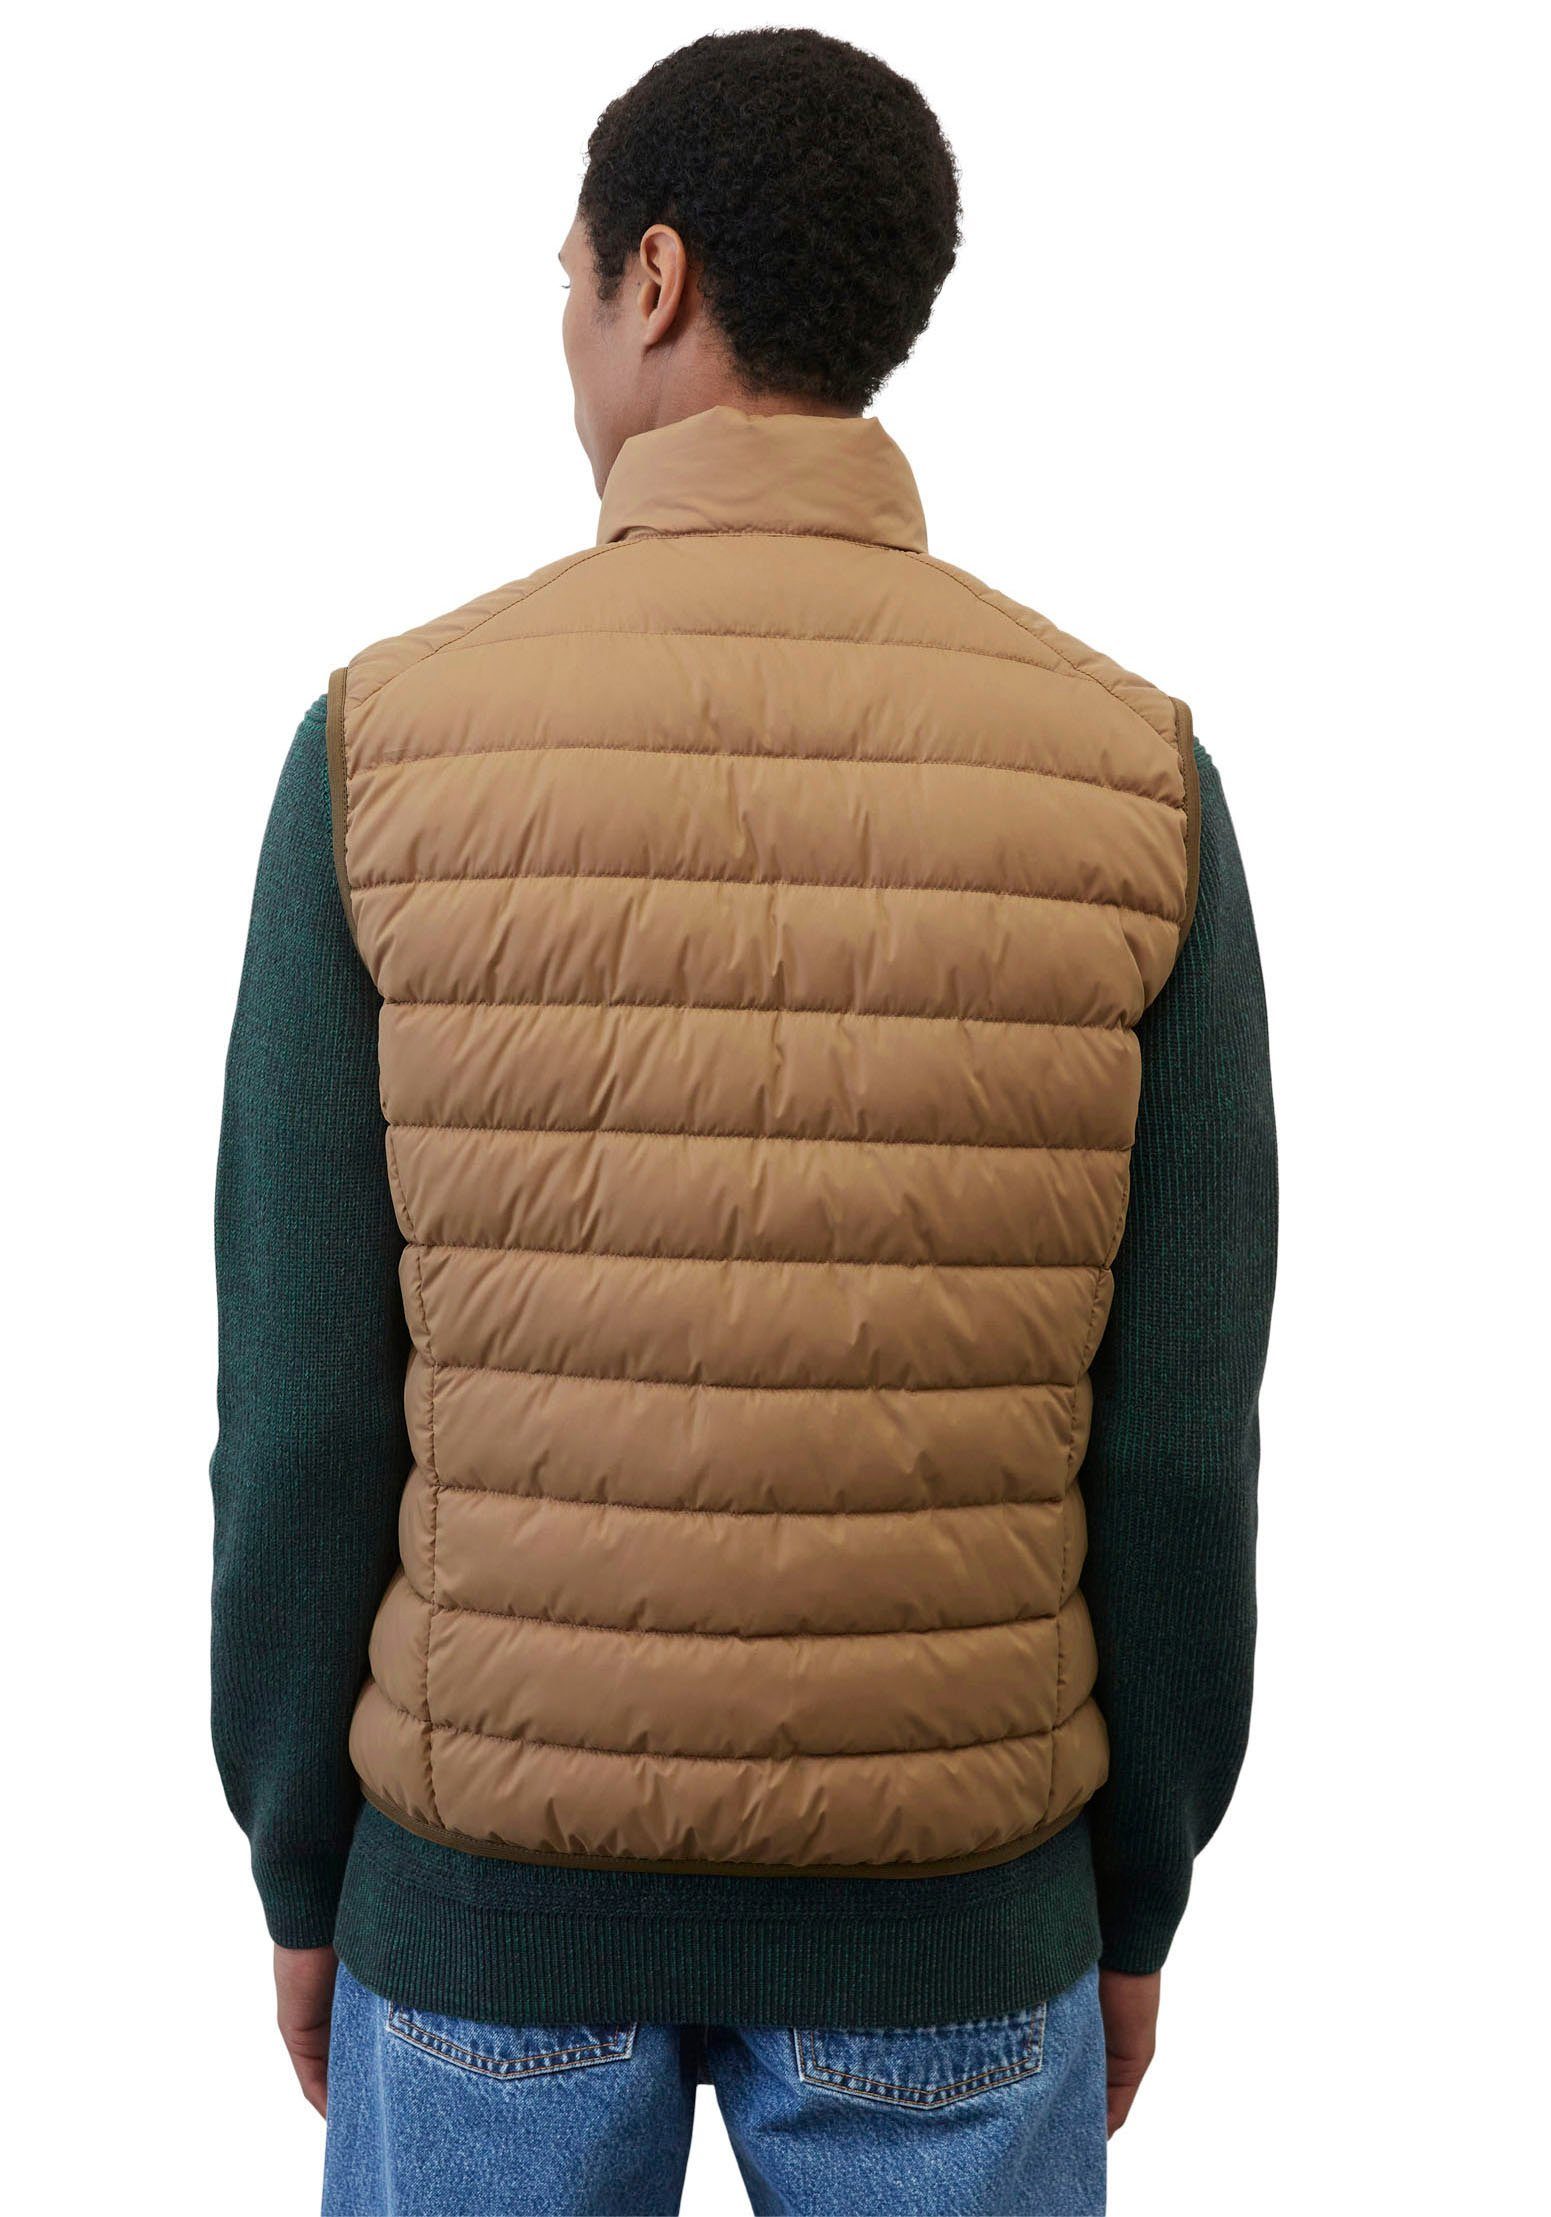 collar Vest, Oberfläche stand-up Marc O'Polo mit sdnd, casabella wasserabweisender brown Steppweste